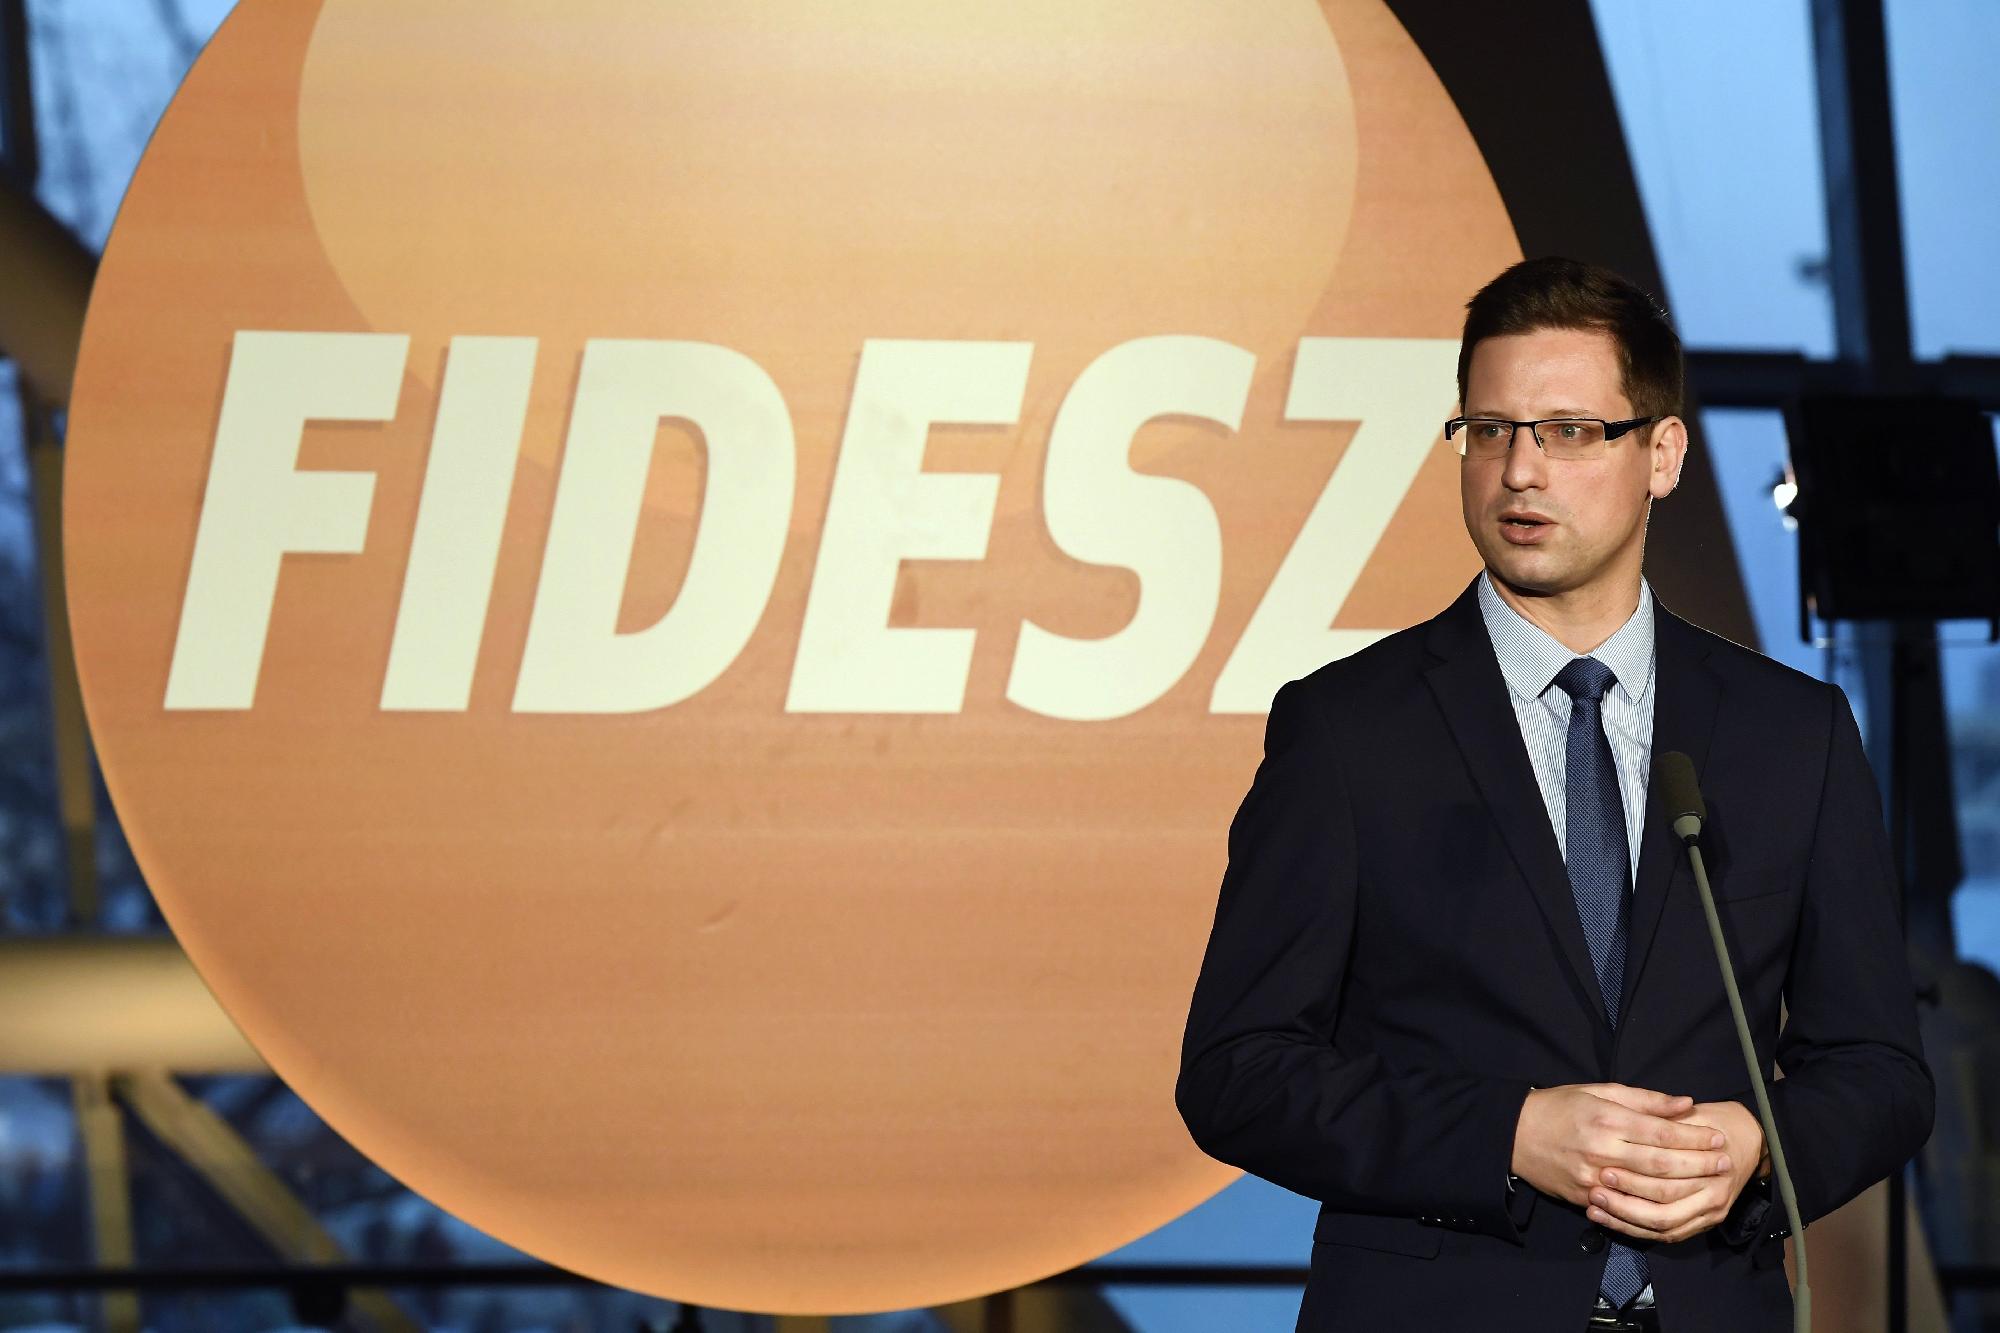 Gulyás Gergely szorosabbra fűzné a kapcsolatot a Fidesz és a CDU között